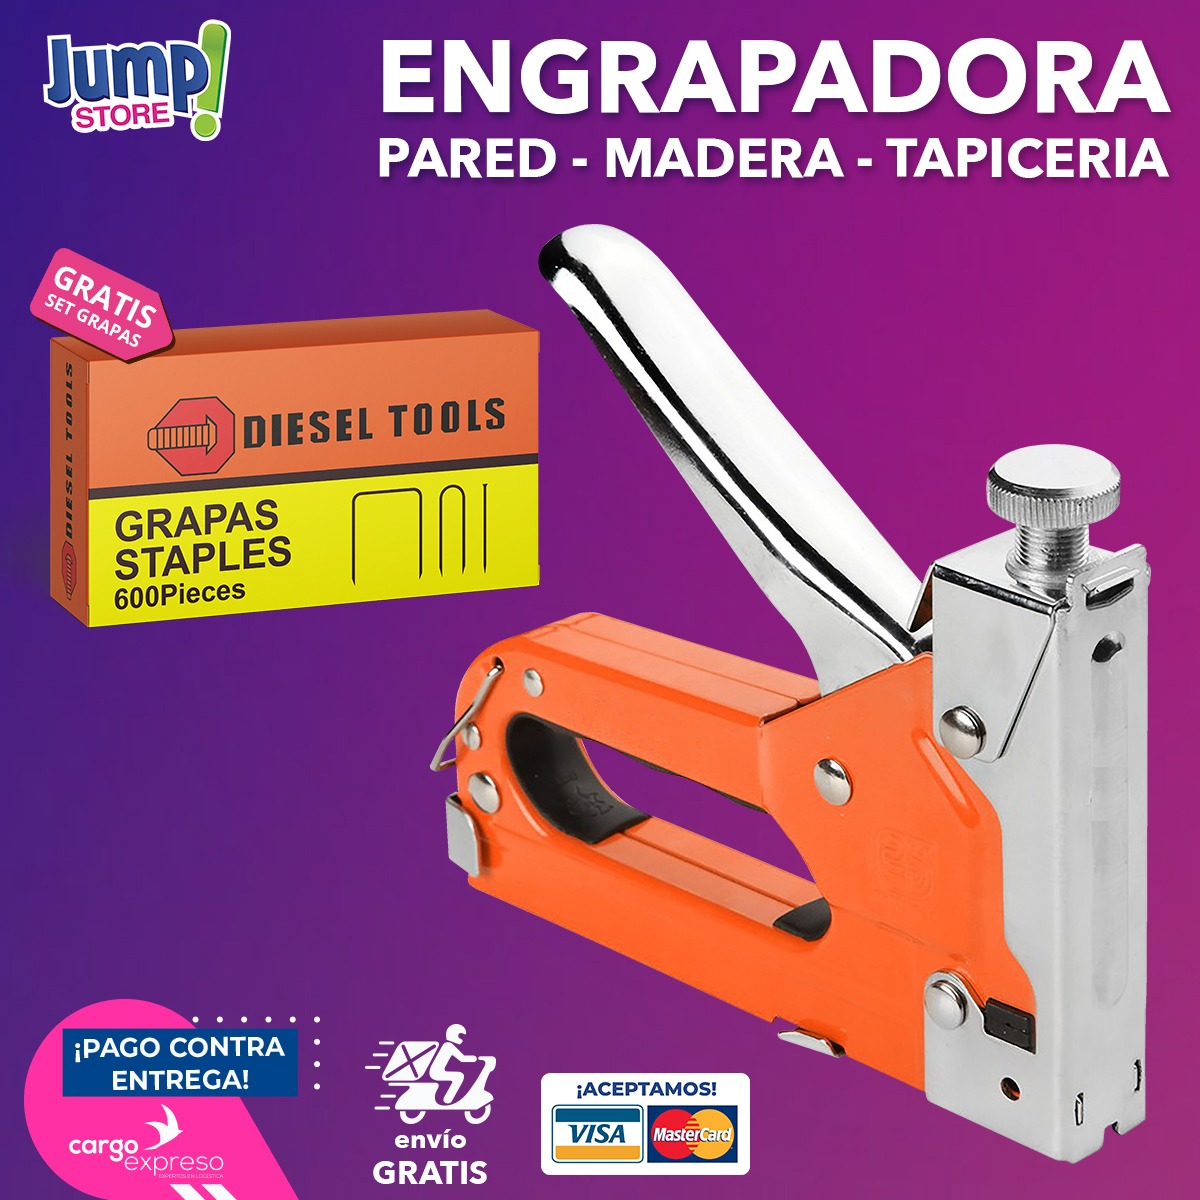 ENGRAPADORA DE USO PESADO (PARED, MADERA Y TAPICERÍA) – Jump Store